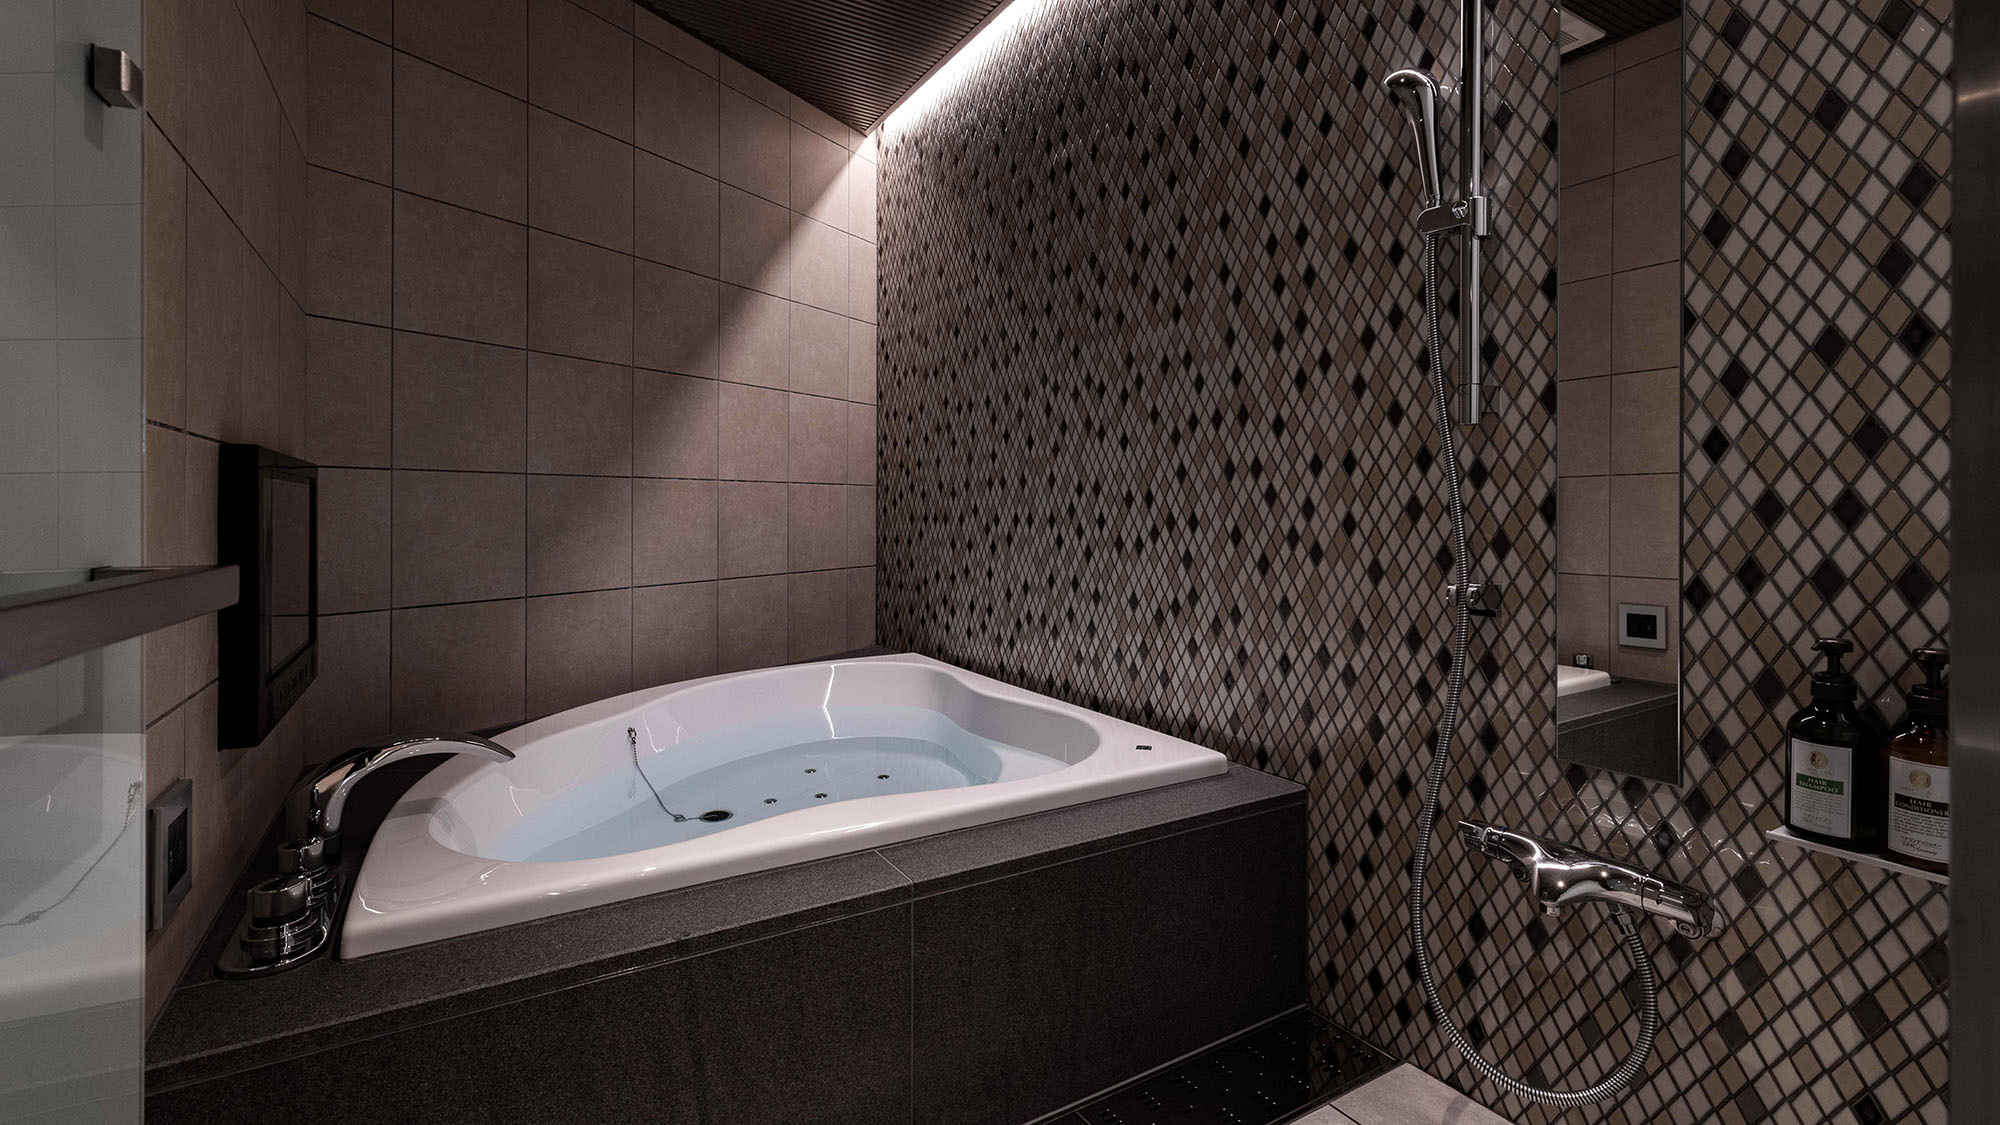 ・【カラオケルーム（喫煙）】モザイクタイル張りのモダンな浴室